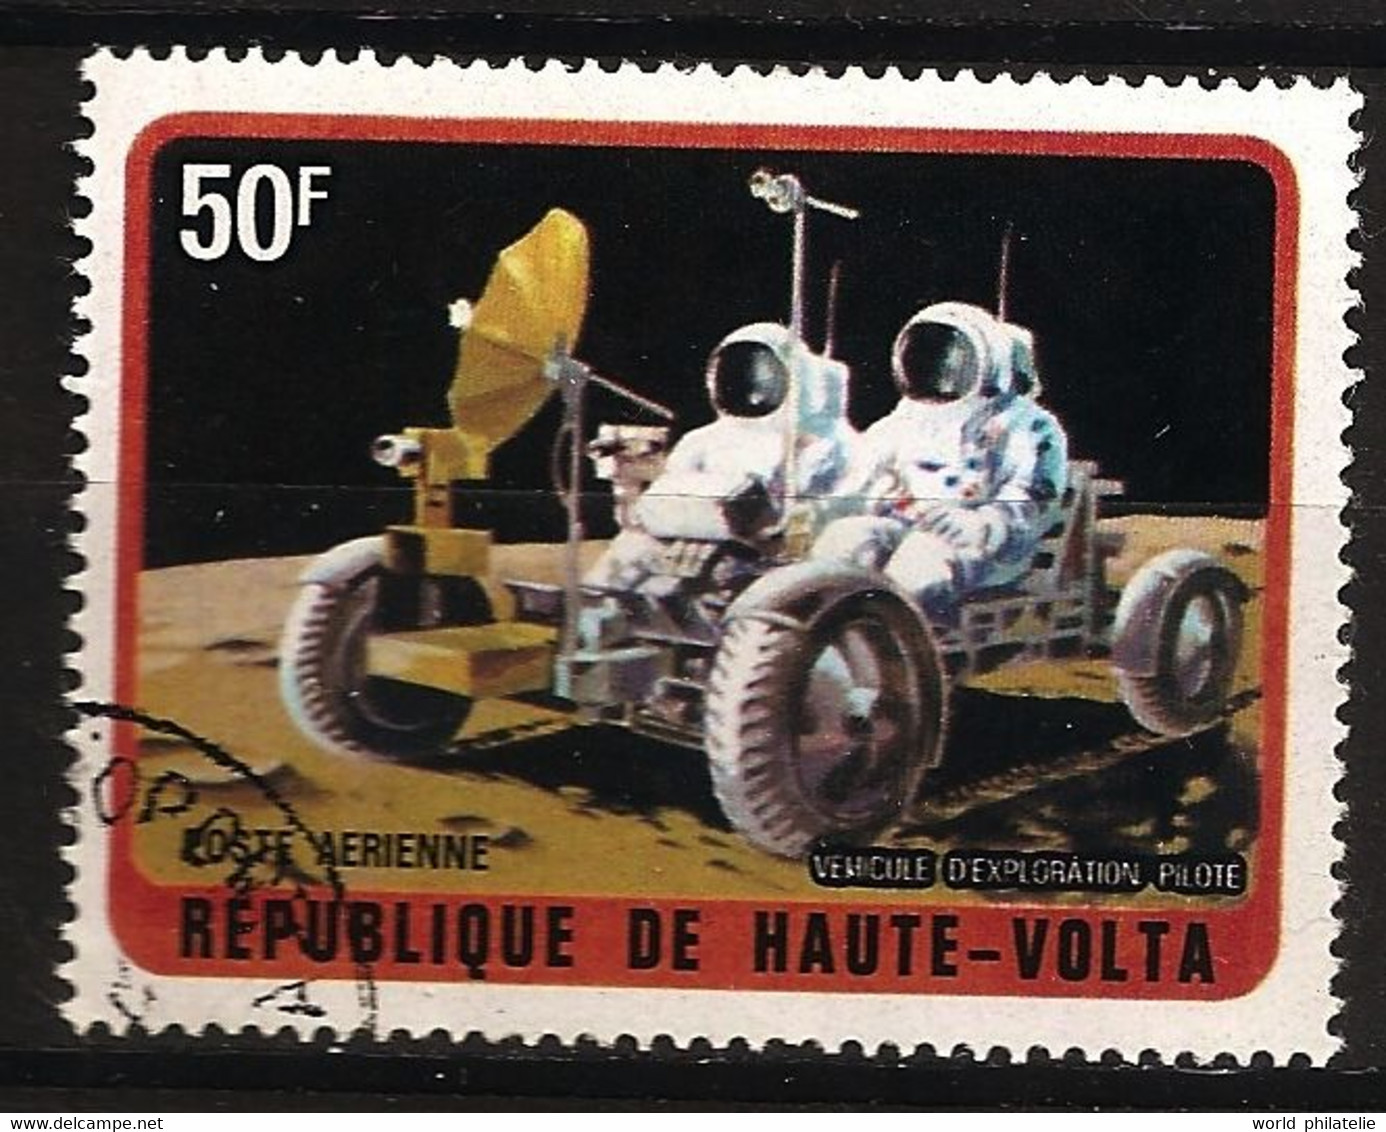 Haute Volta 1973 N° PA 135 Iso O Espace, Astronaute, LEM, Apollo, Lune, Véhicule D'exploration Piloté, Cosmonautes - Haute-Volta (1958-1984)